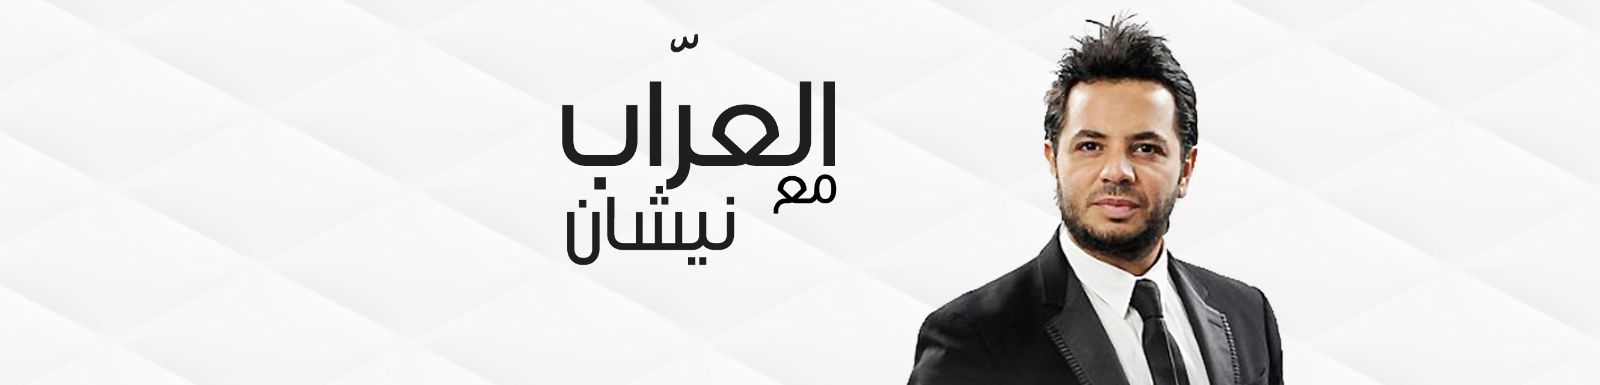 مشاهدة برنامج العراب حلقة جمال سليمان و الهام شاهين 2014 كاملة